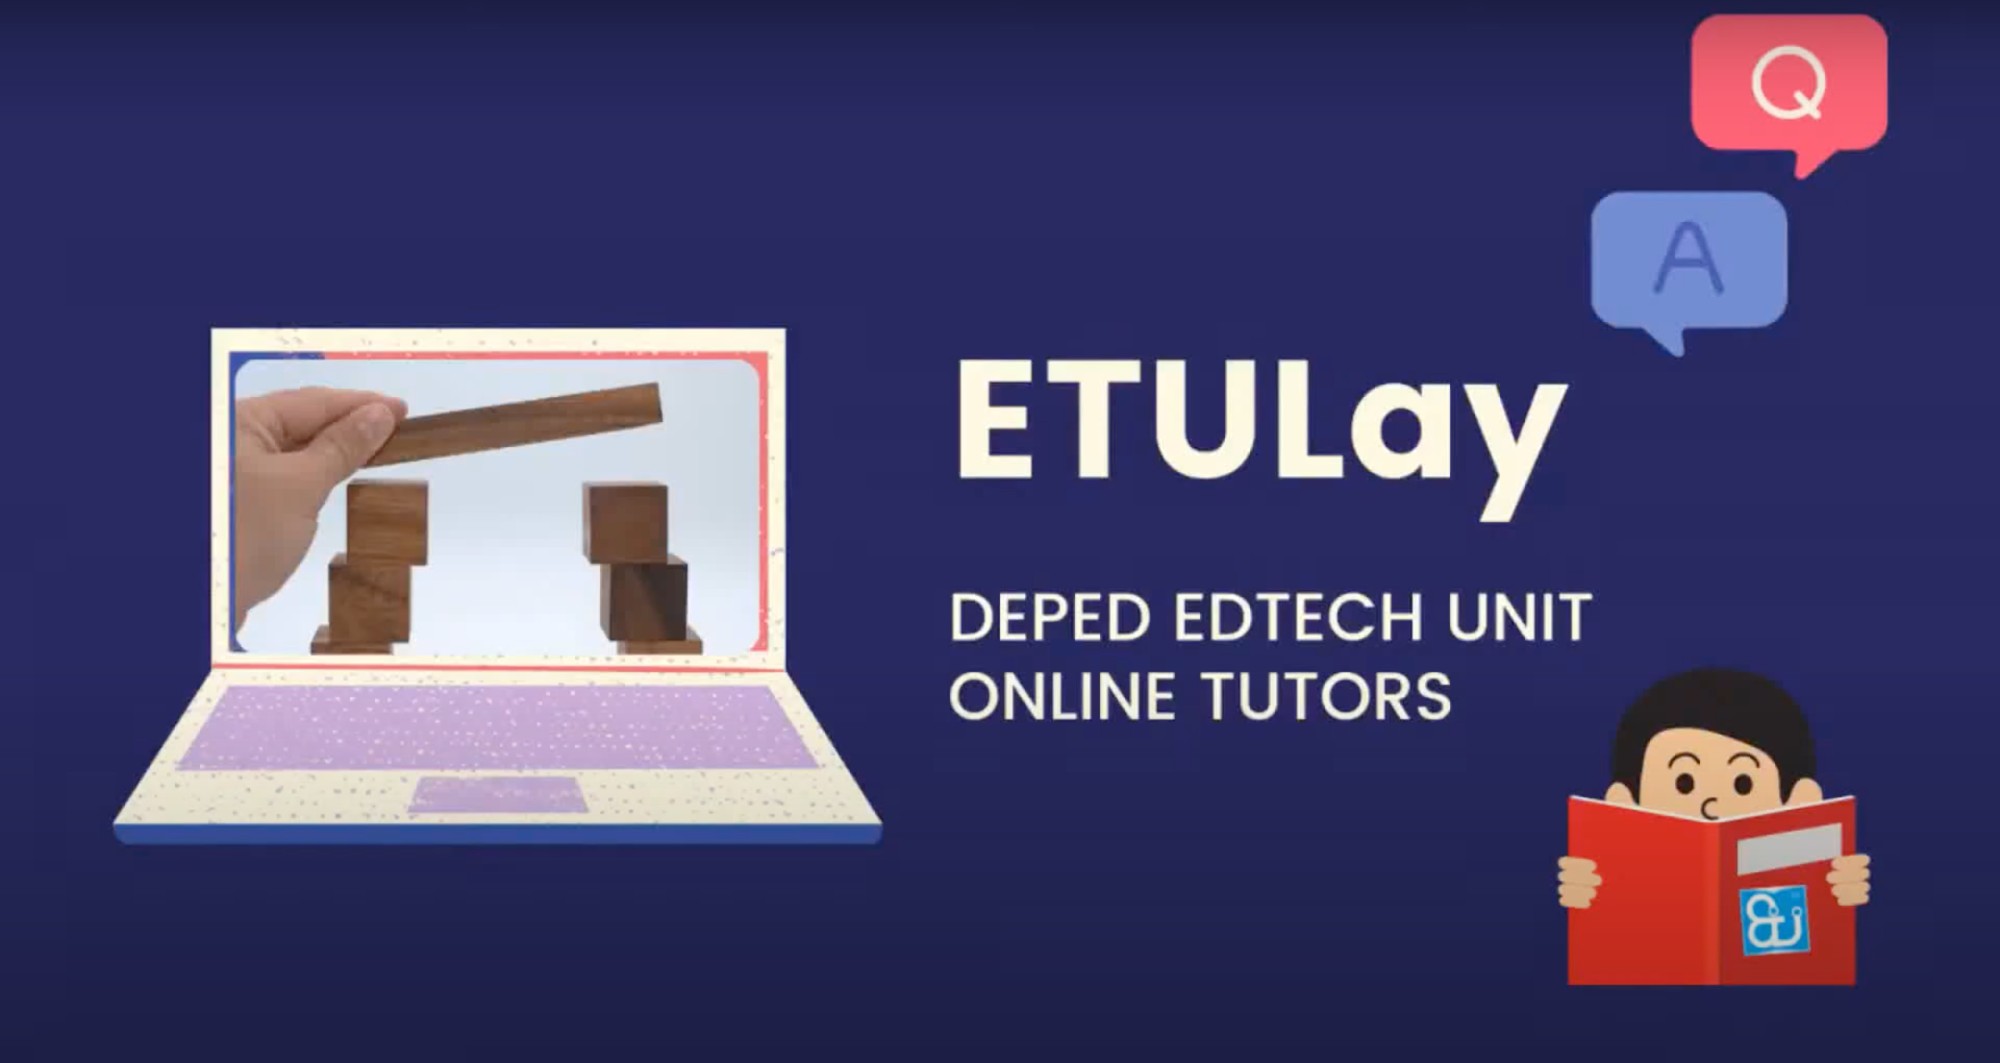 DepEd Free online tutoring